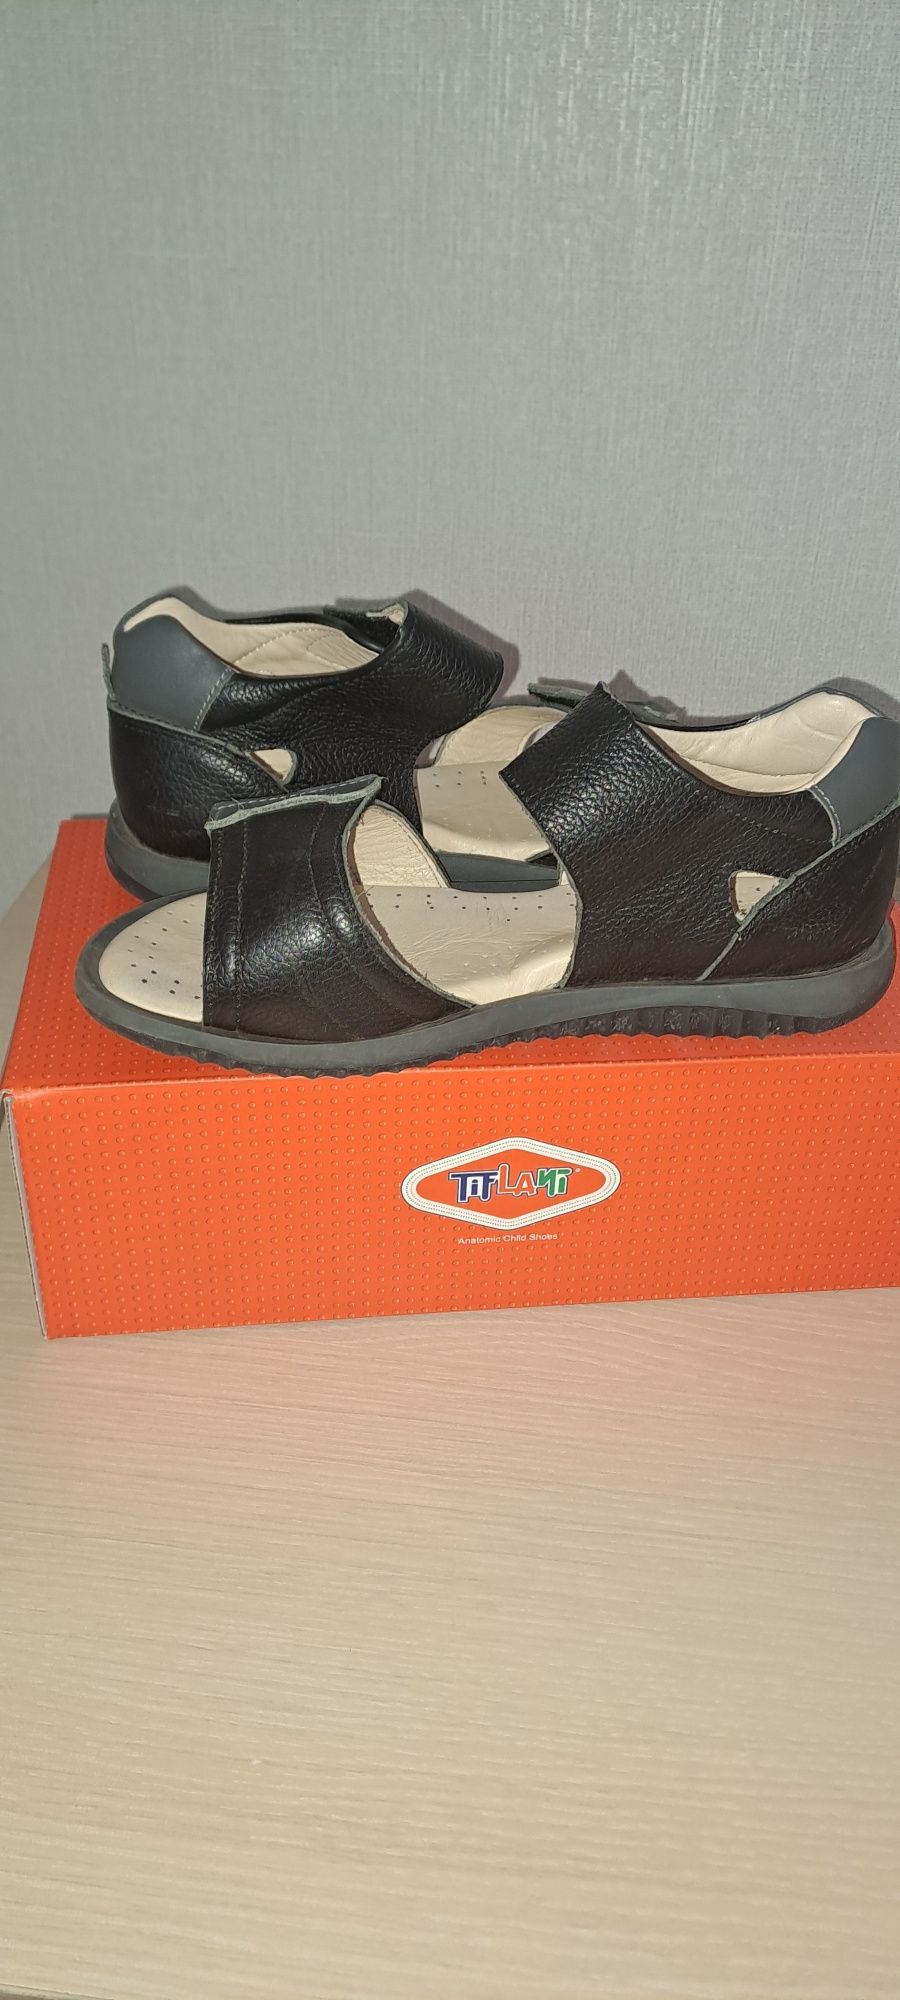 Продам кожаные сандалии Tiflani 34р-р